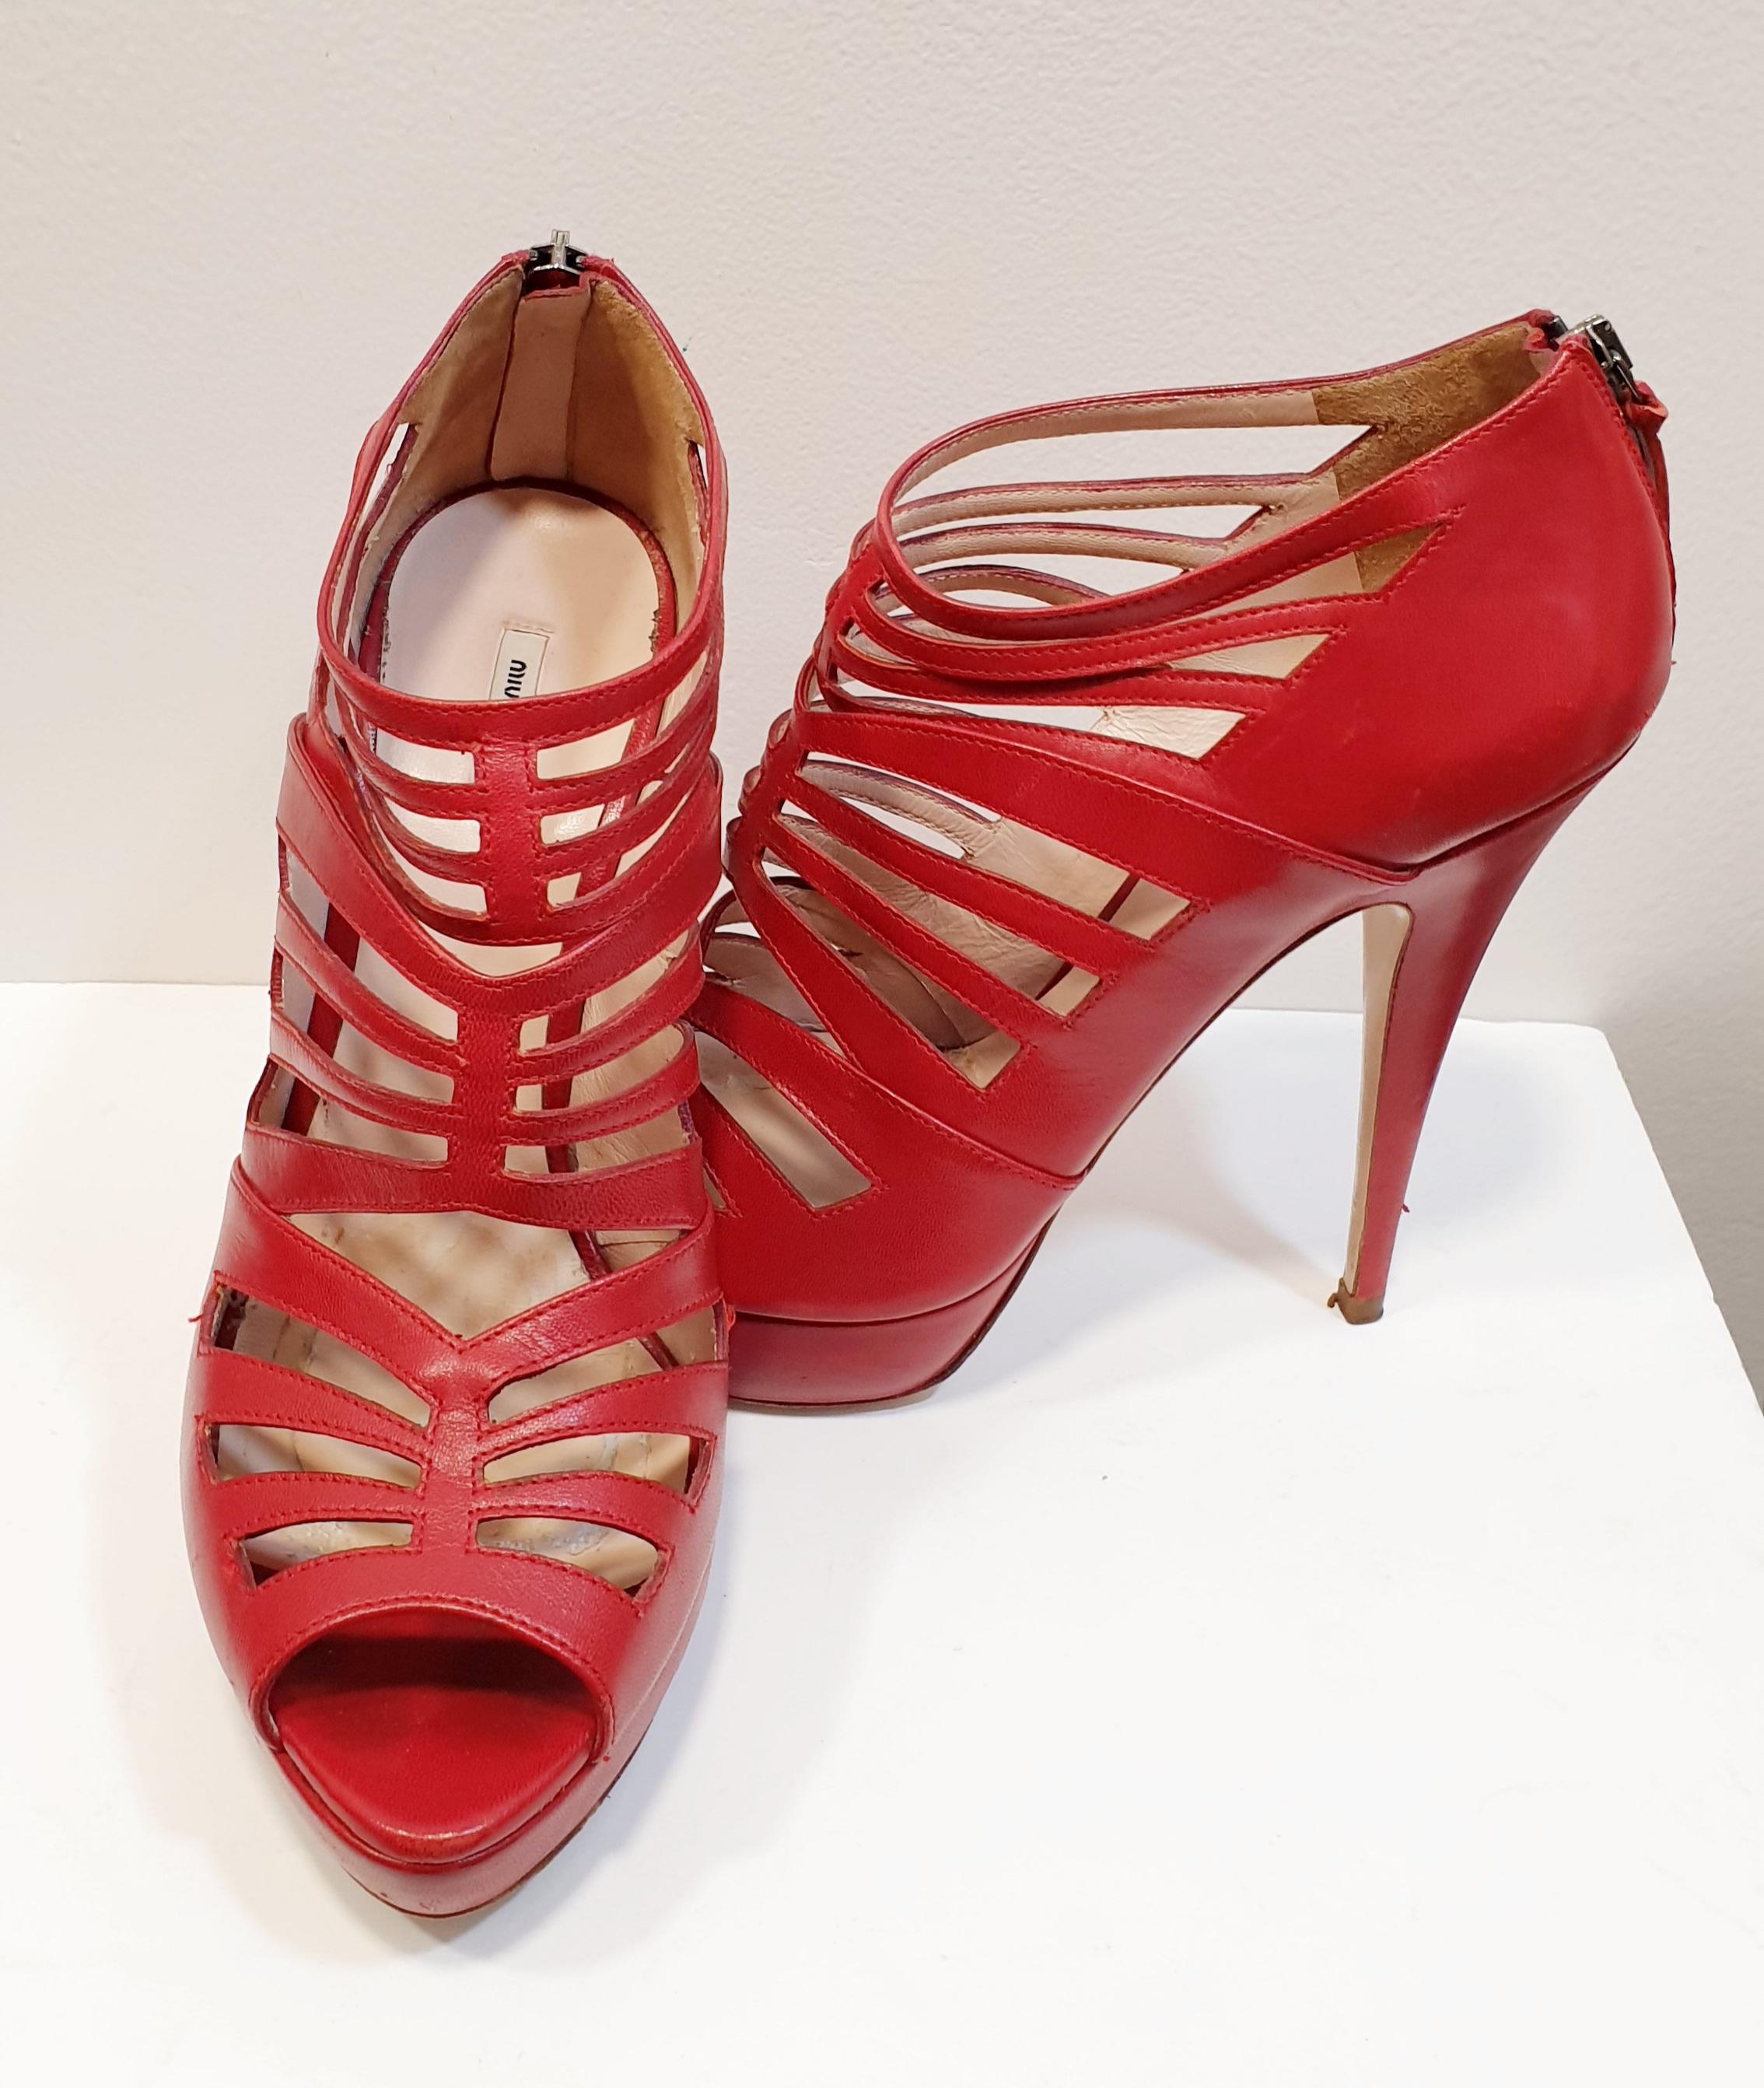 platform red shoes